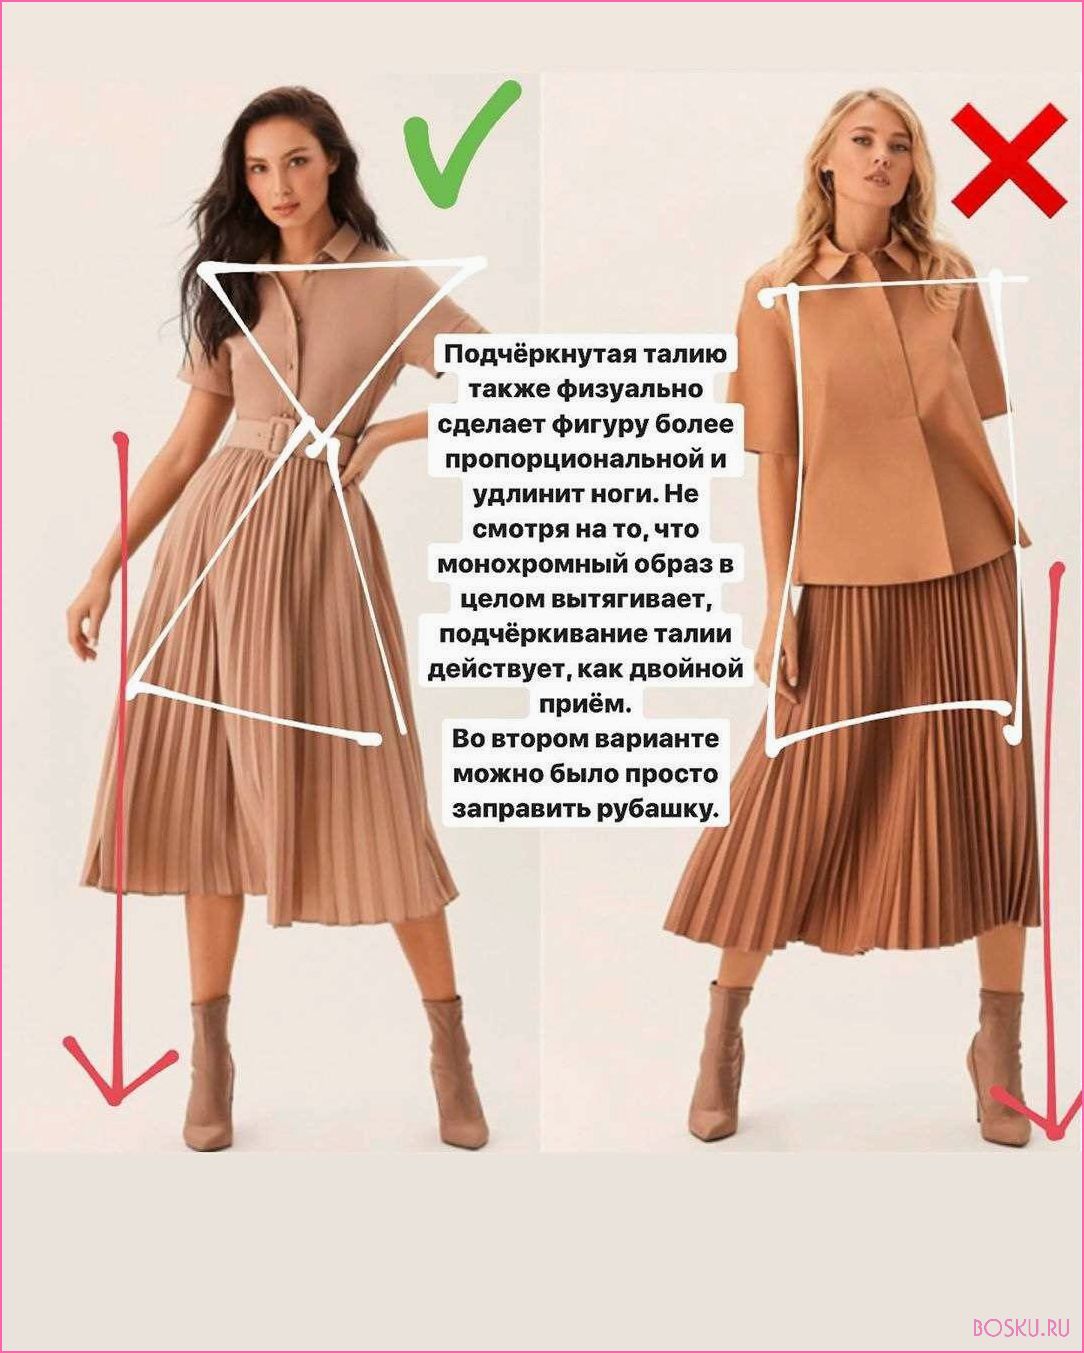 Как скорректировать фигуру с помощью одежды: 5 универсальных приемов